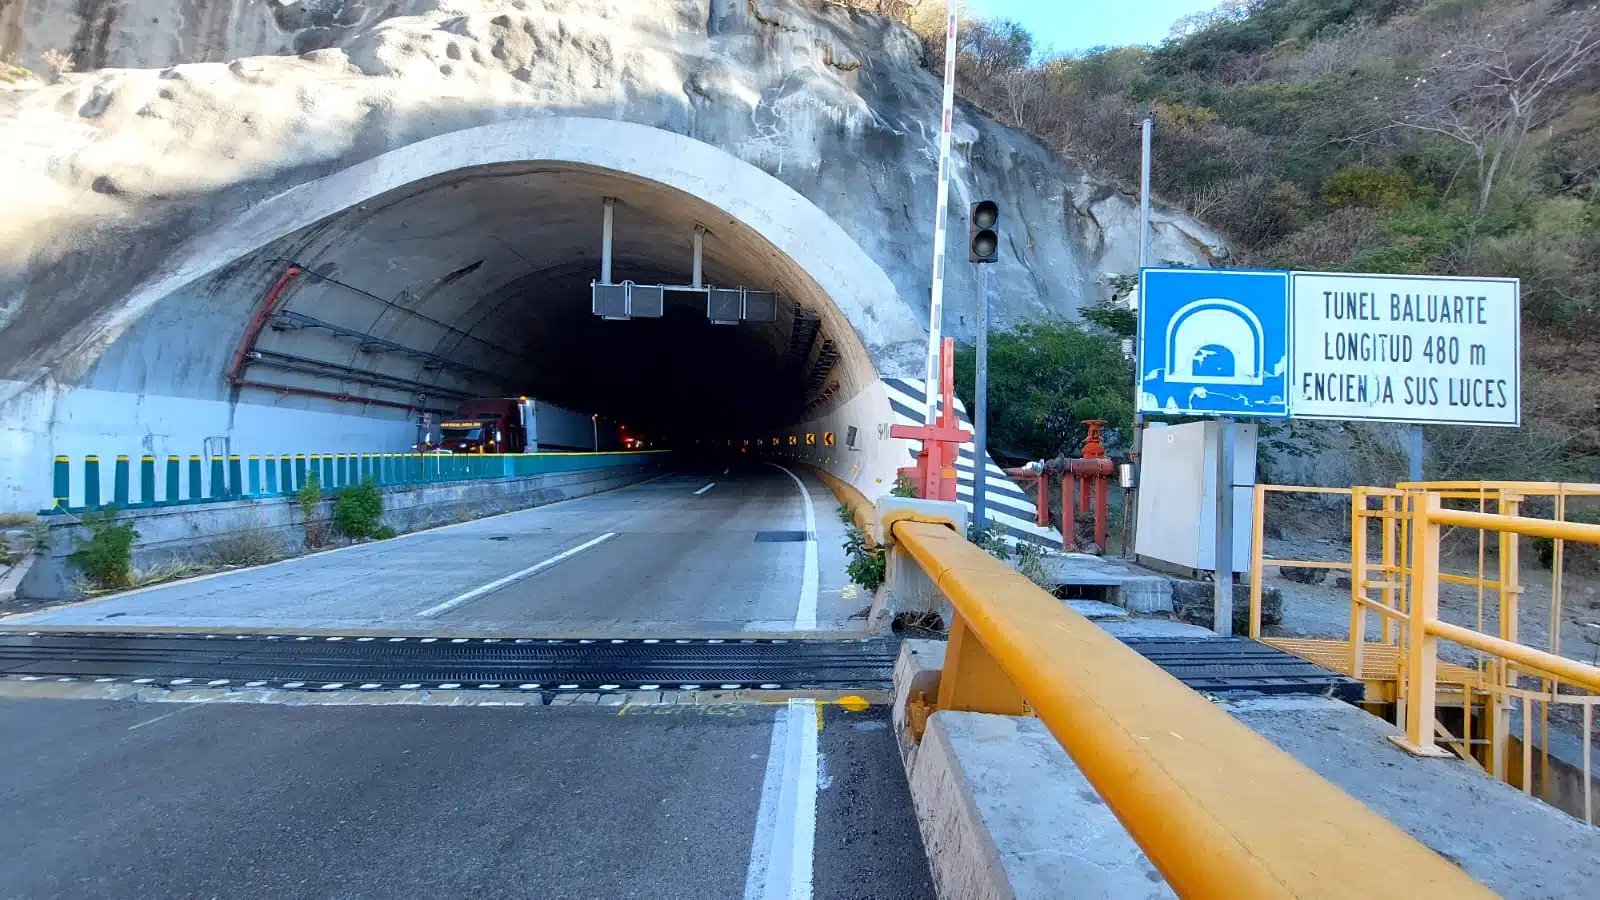 Tunel Baluarte Choque Autopista Mazatlan Durango Traileres